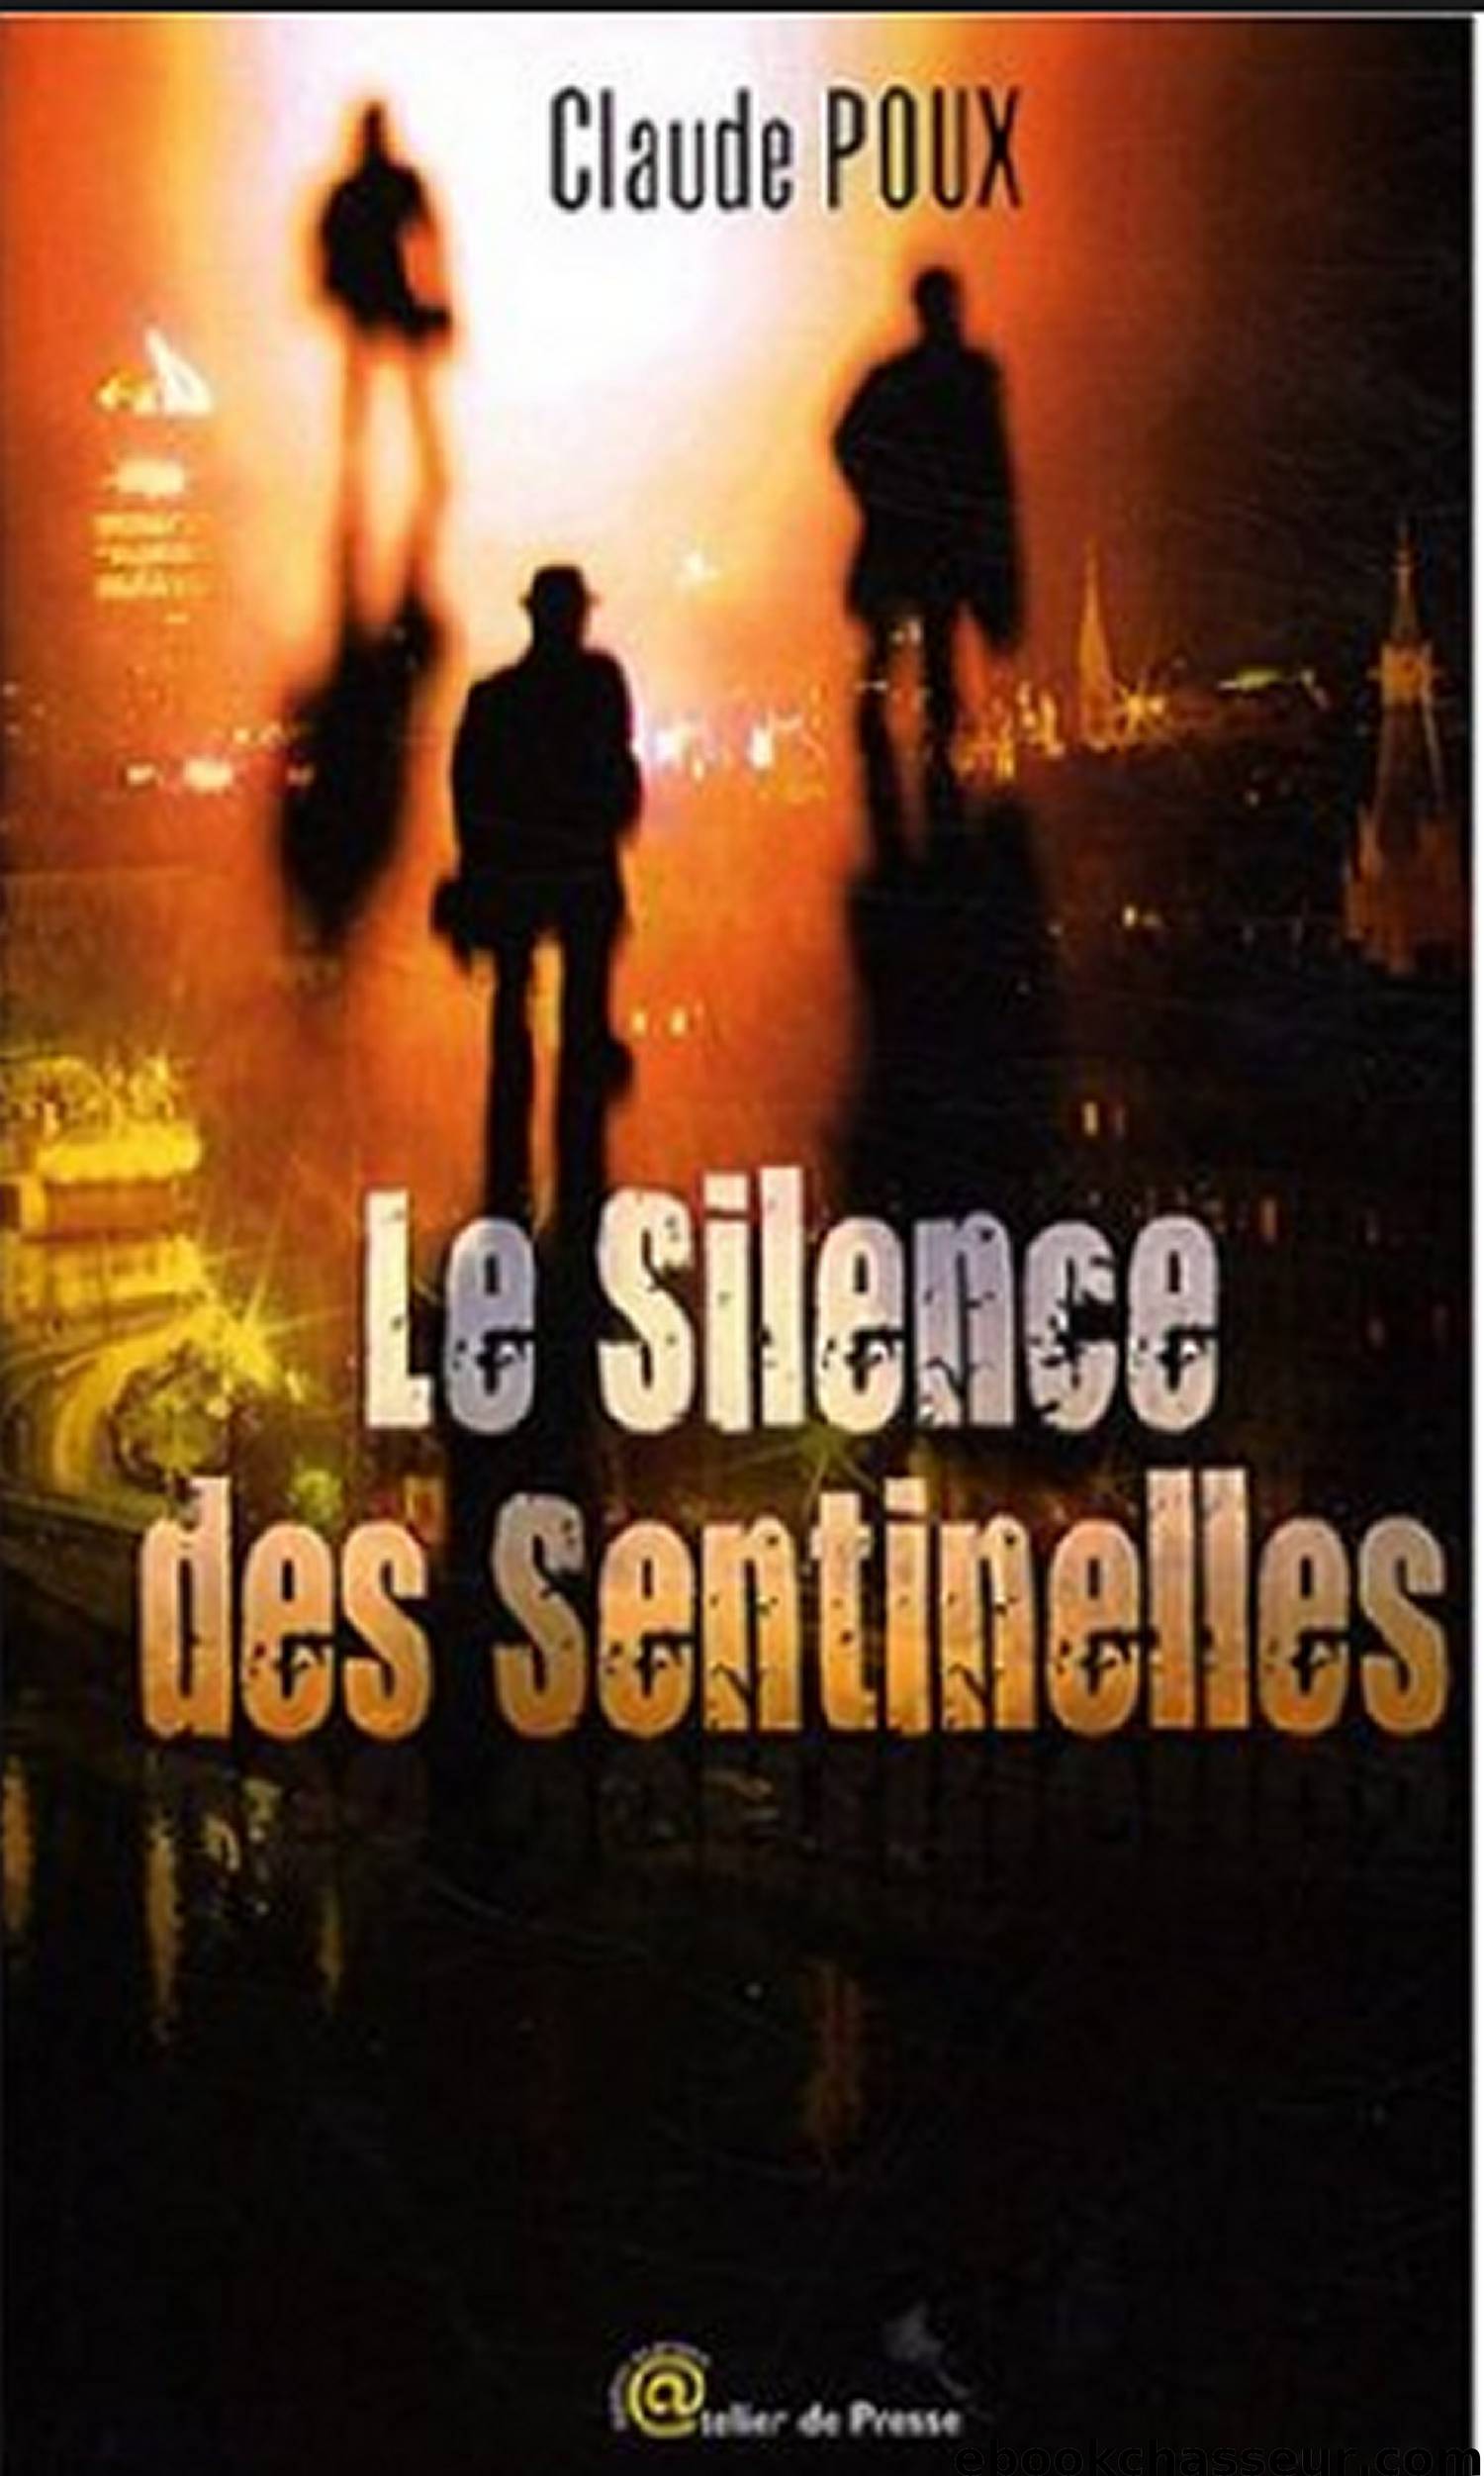 Le silence des sentinelles by Claude Poux